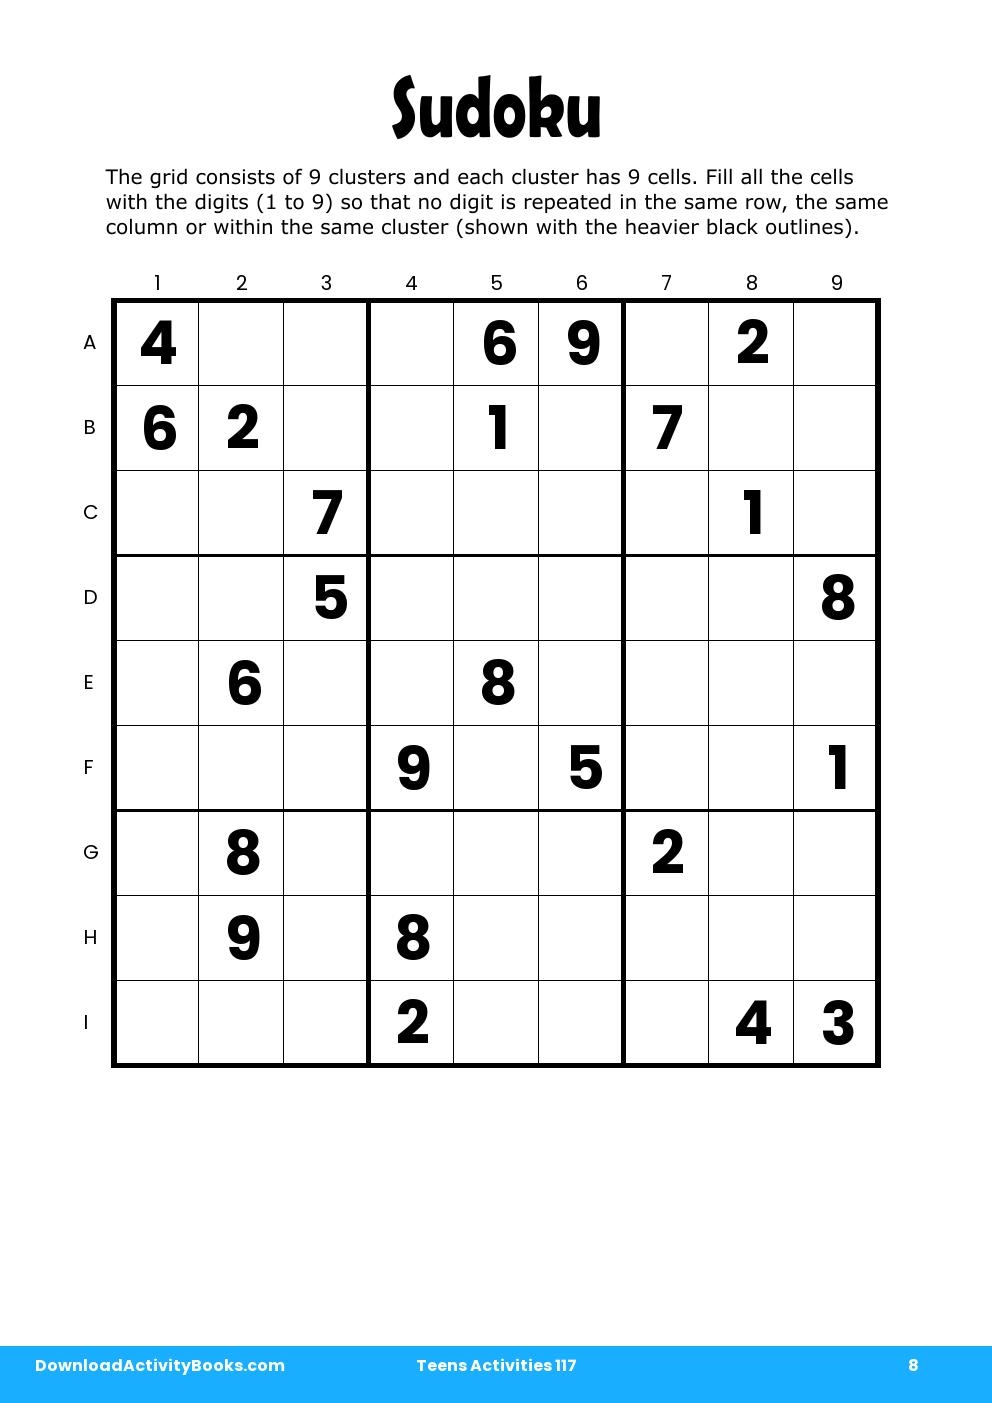 Sudoku in Teens Activities 117